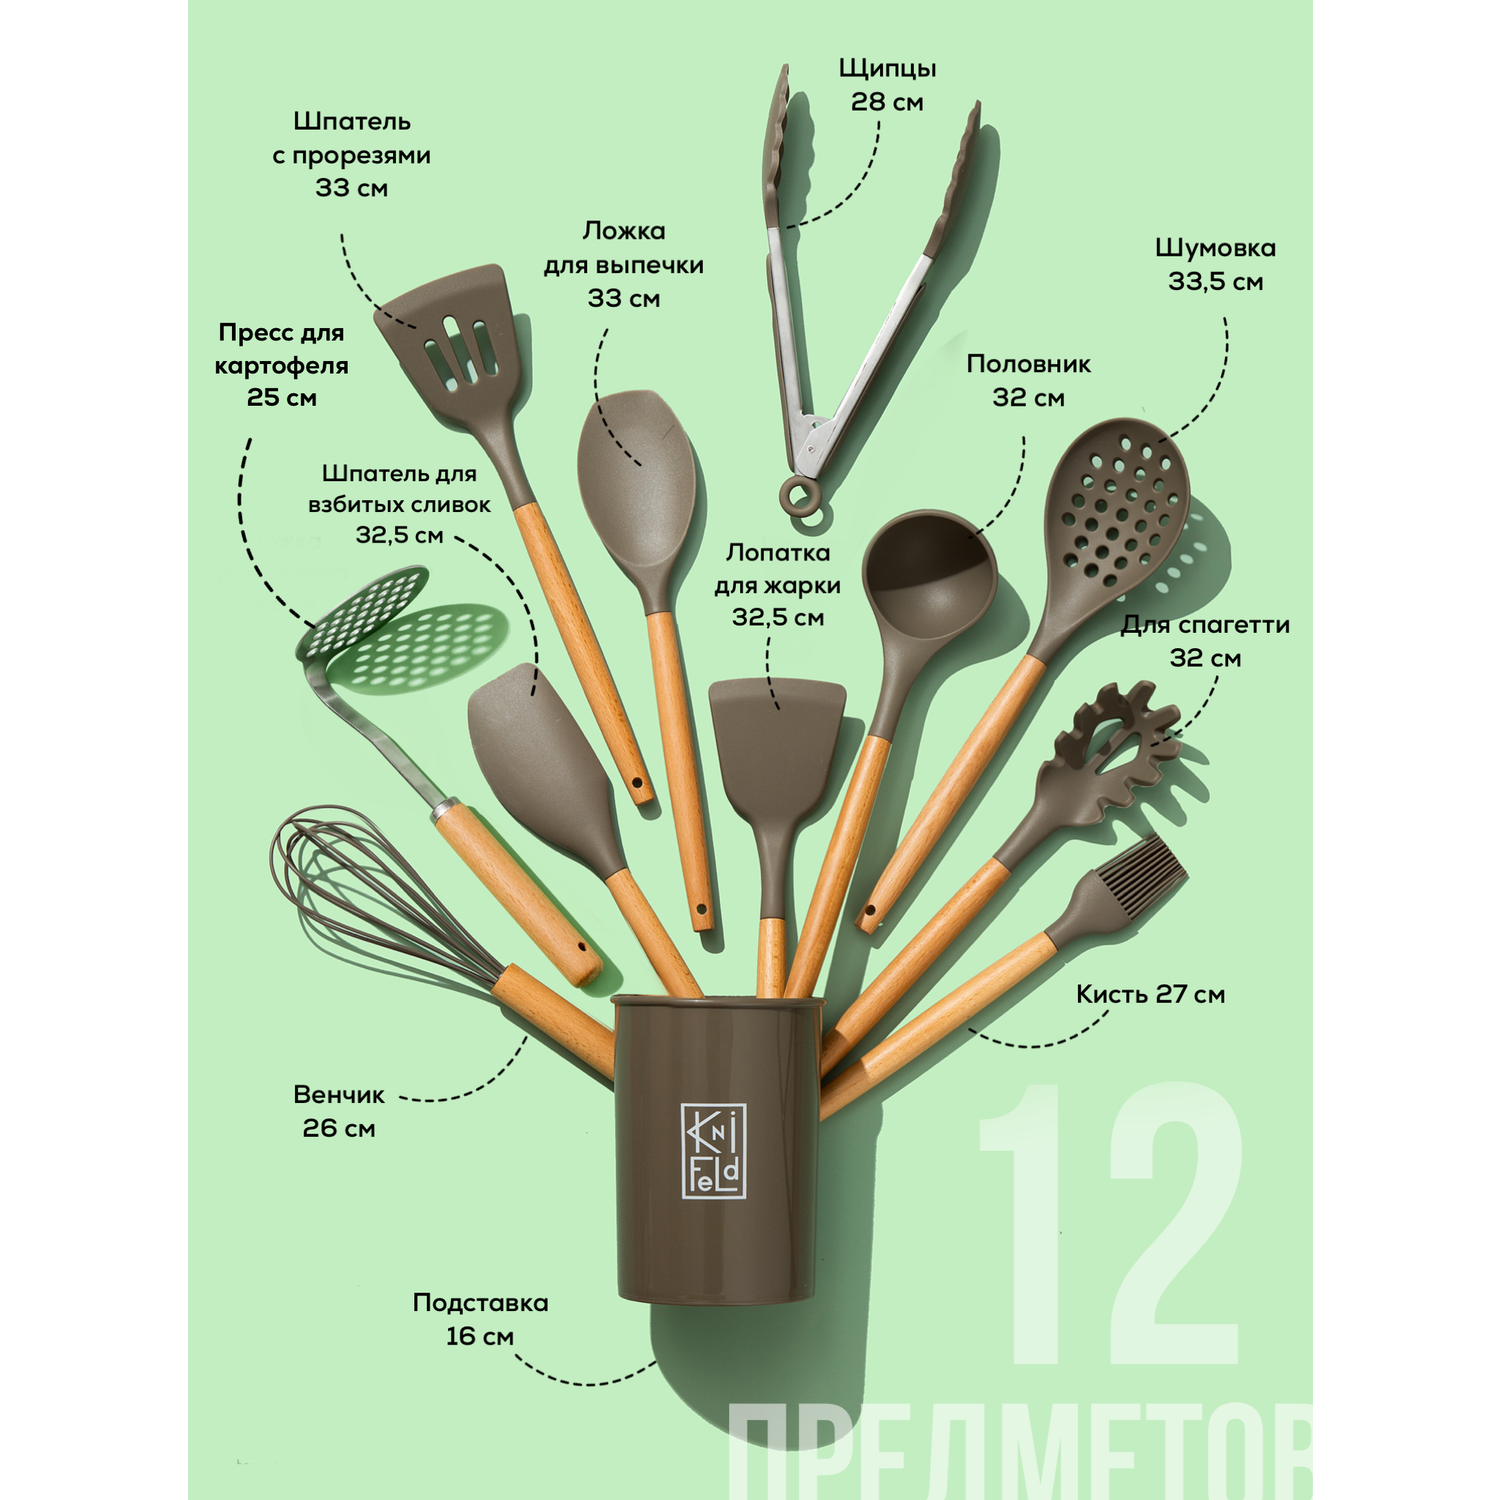 Набор кухонных принадлежностей Knifeld утварь для готовки 12 предметов - фото 2